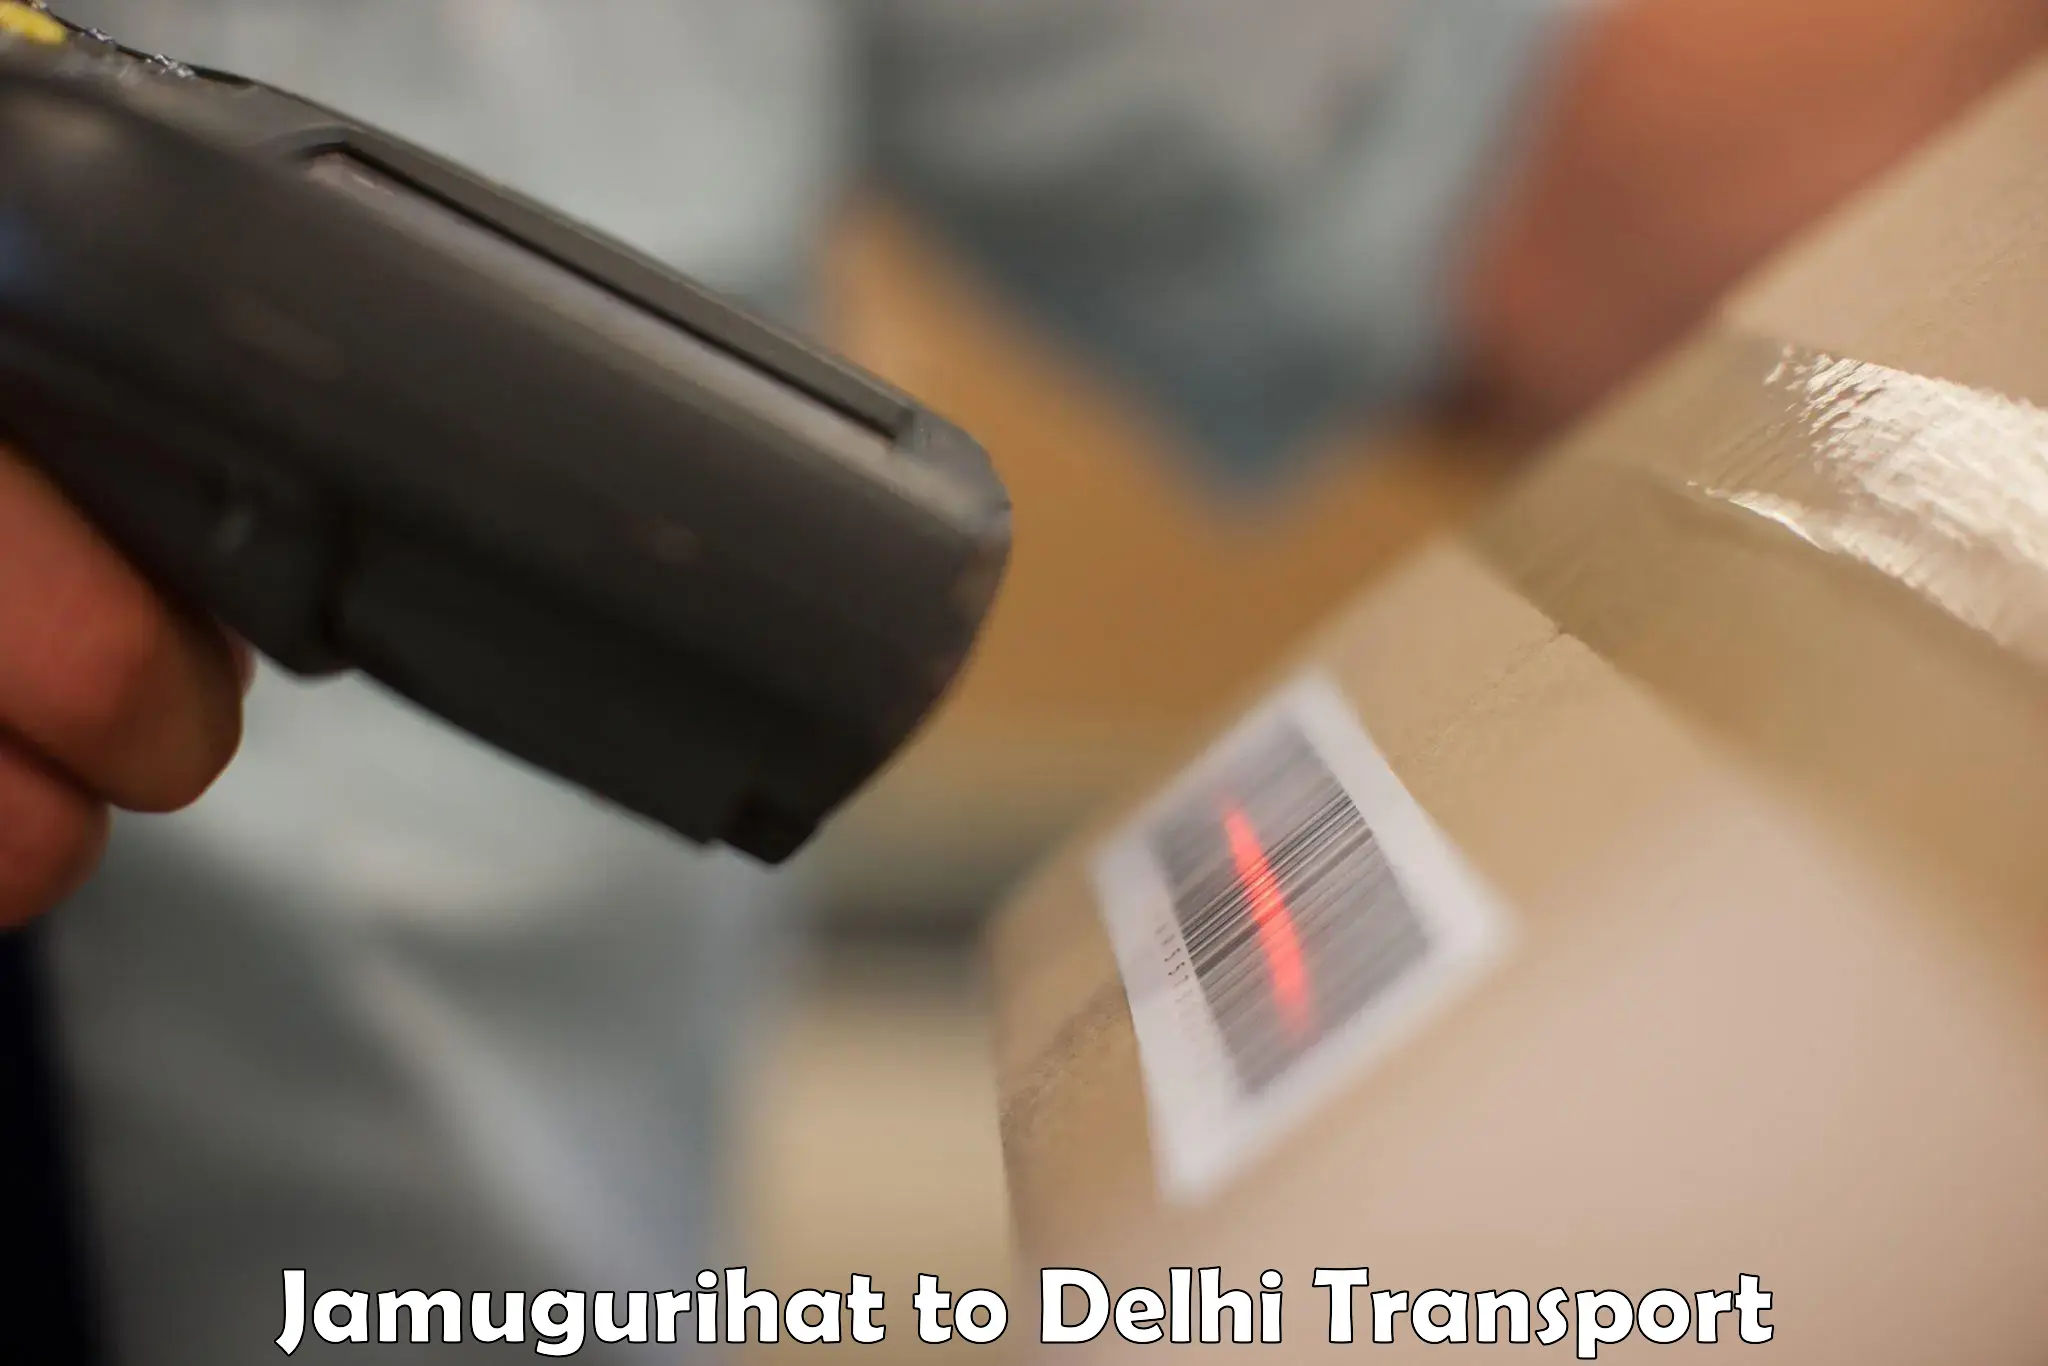 Pick up transport service Jamugurihat to Delhi